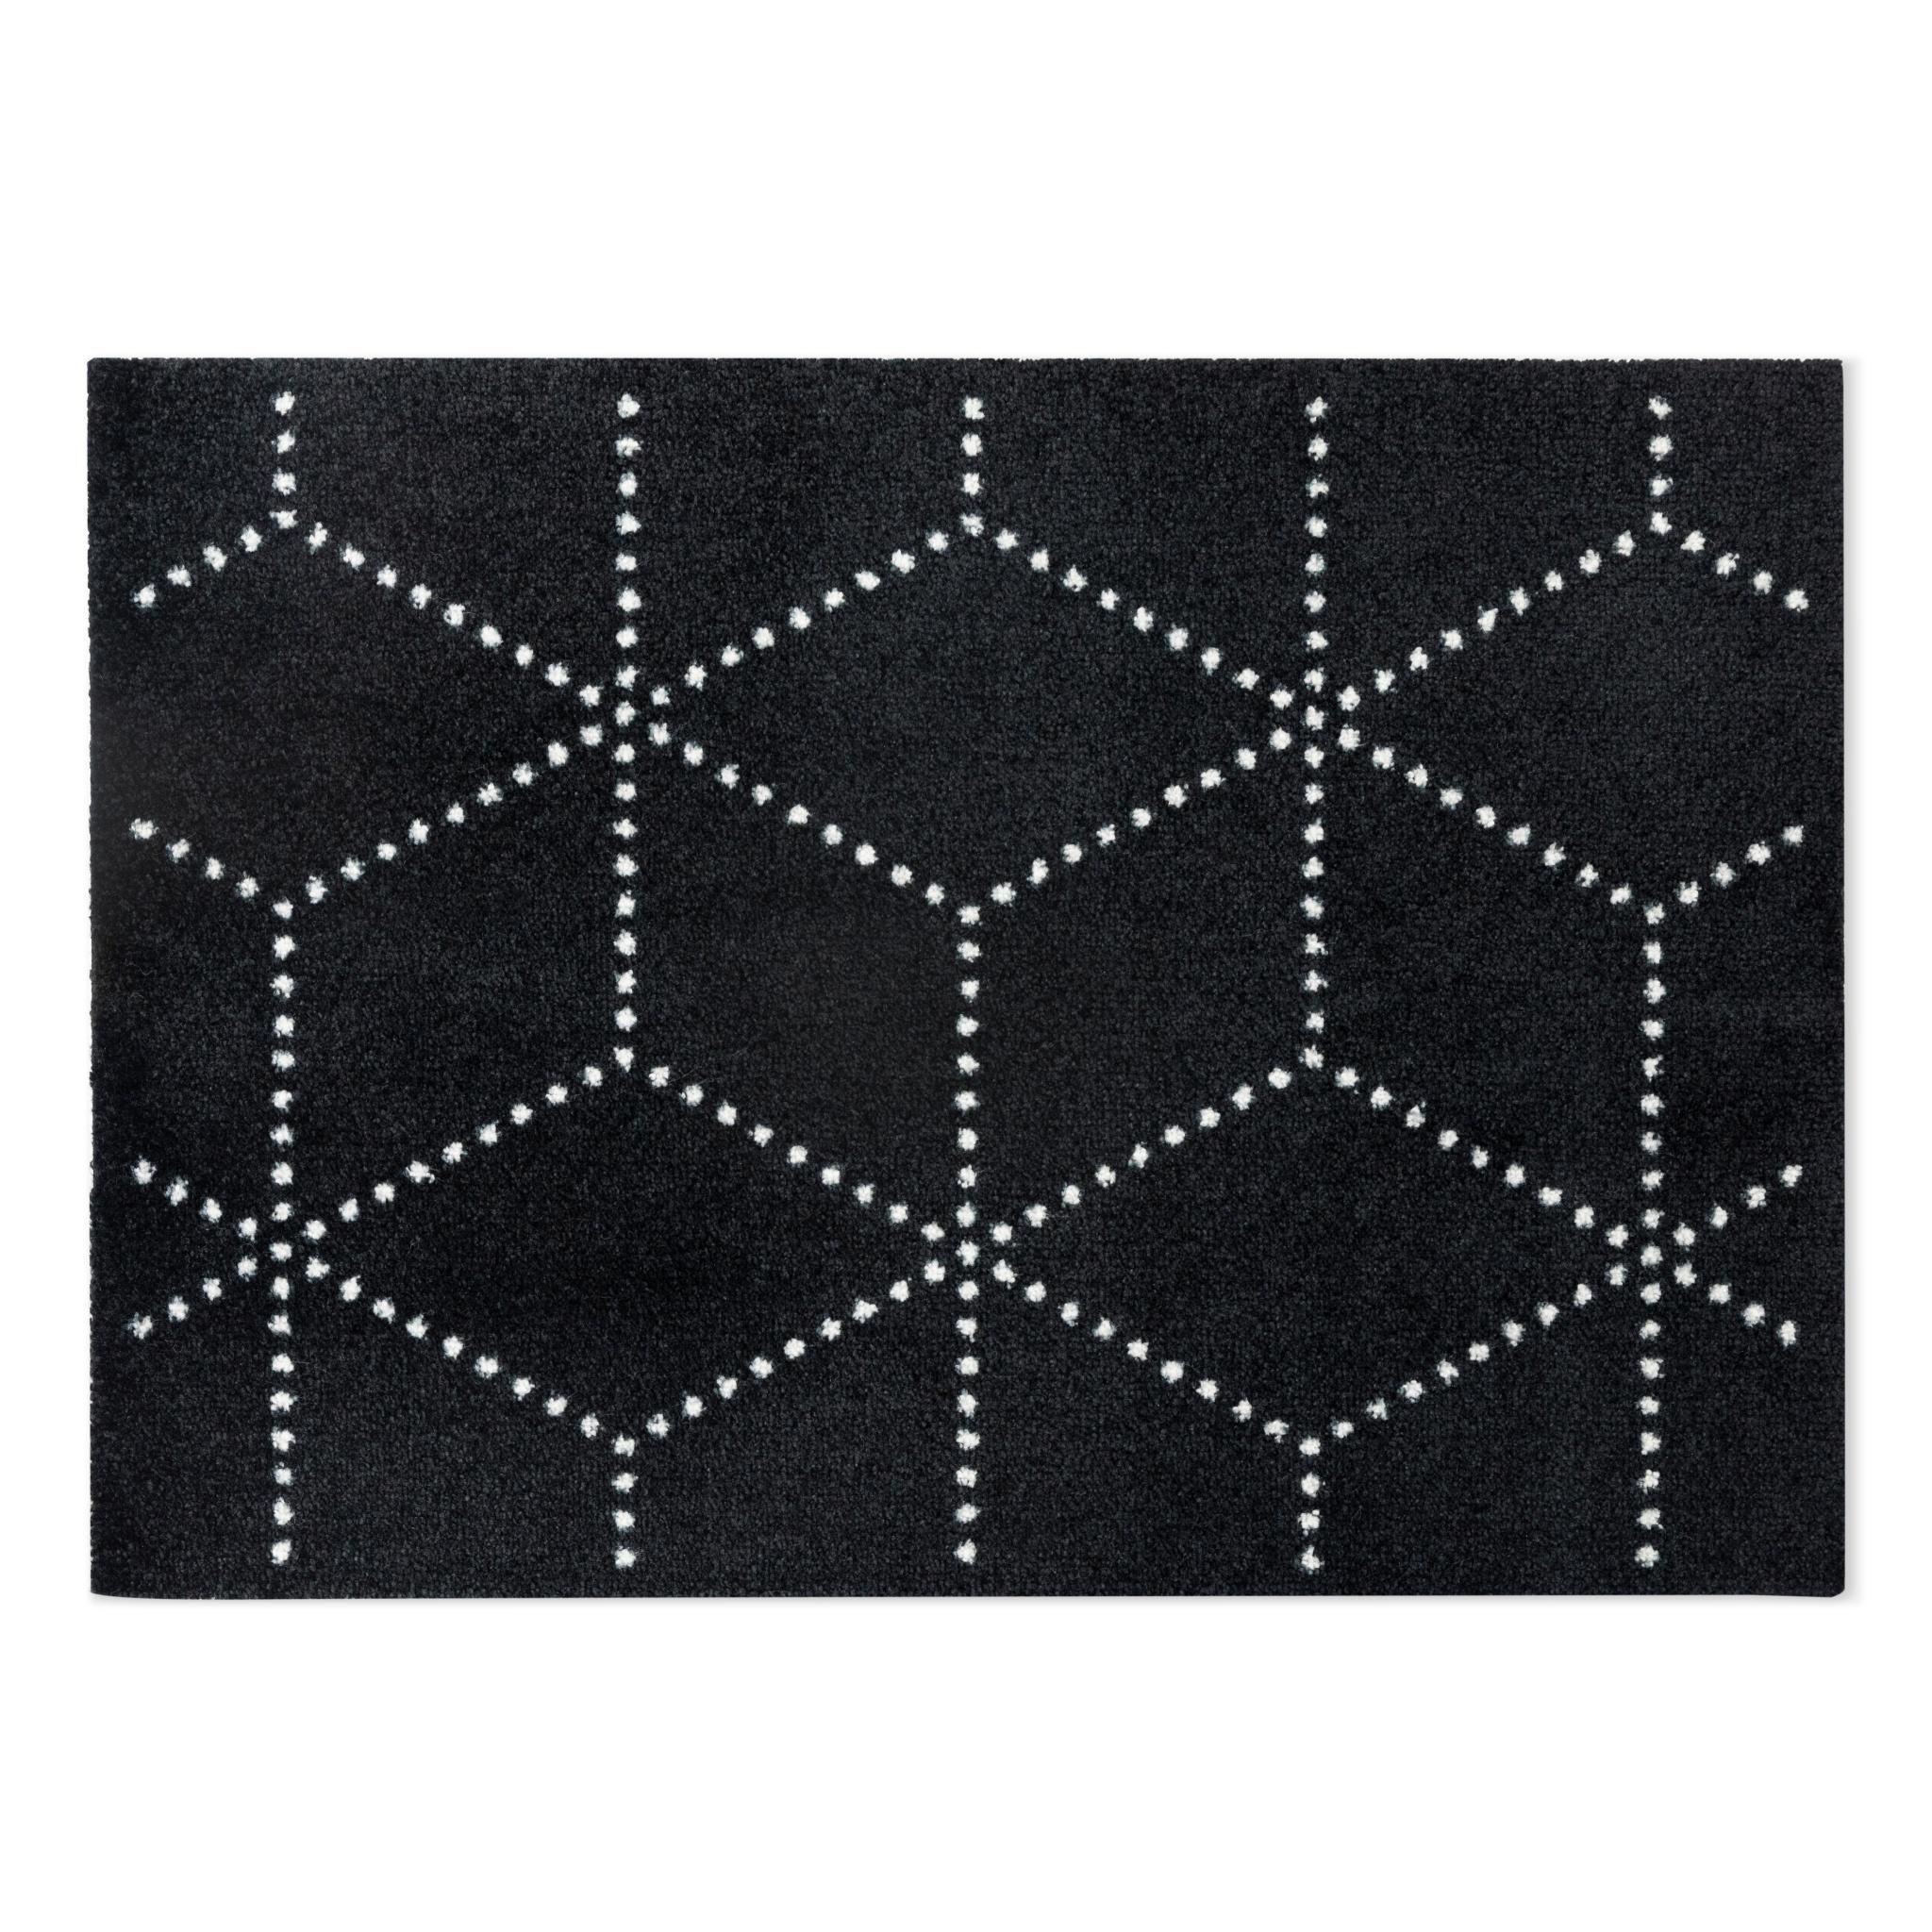 Heymat Doormat Hagl Black, 85x115cm